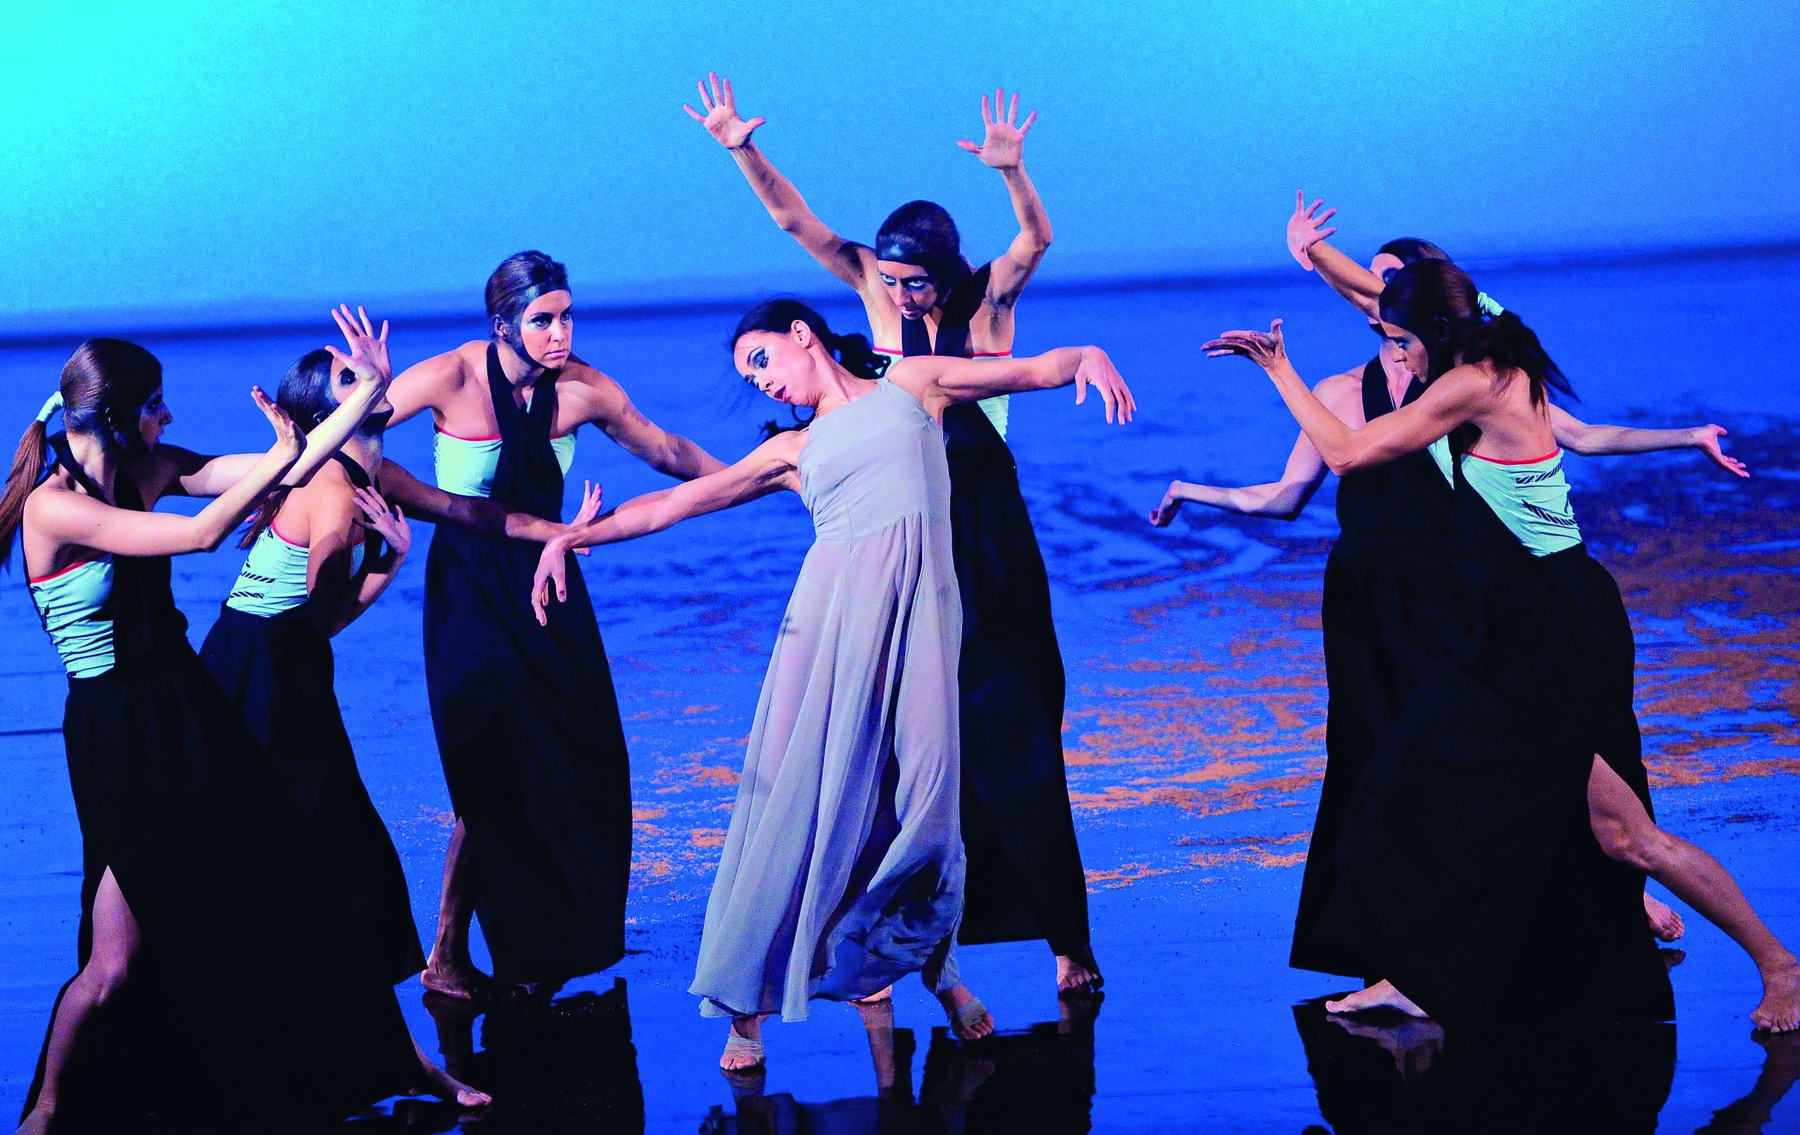 Fotografia. Imagem de uma apresentação em um palco, com mulheres em posições de danças, com os braços levantados em diferentes ângulos. Ao centro, destaque para uma mulher de vestido azul claro, cercada de outras mulheres de roupas escuras com faixas azuis.